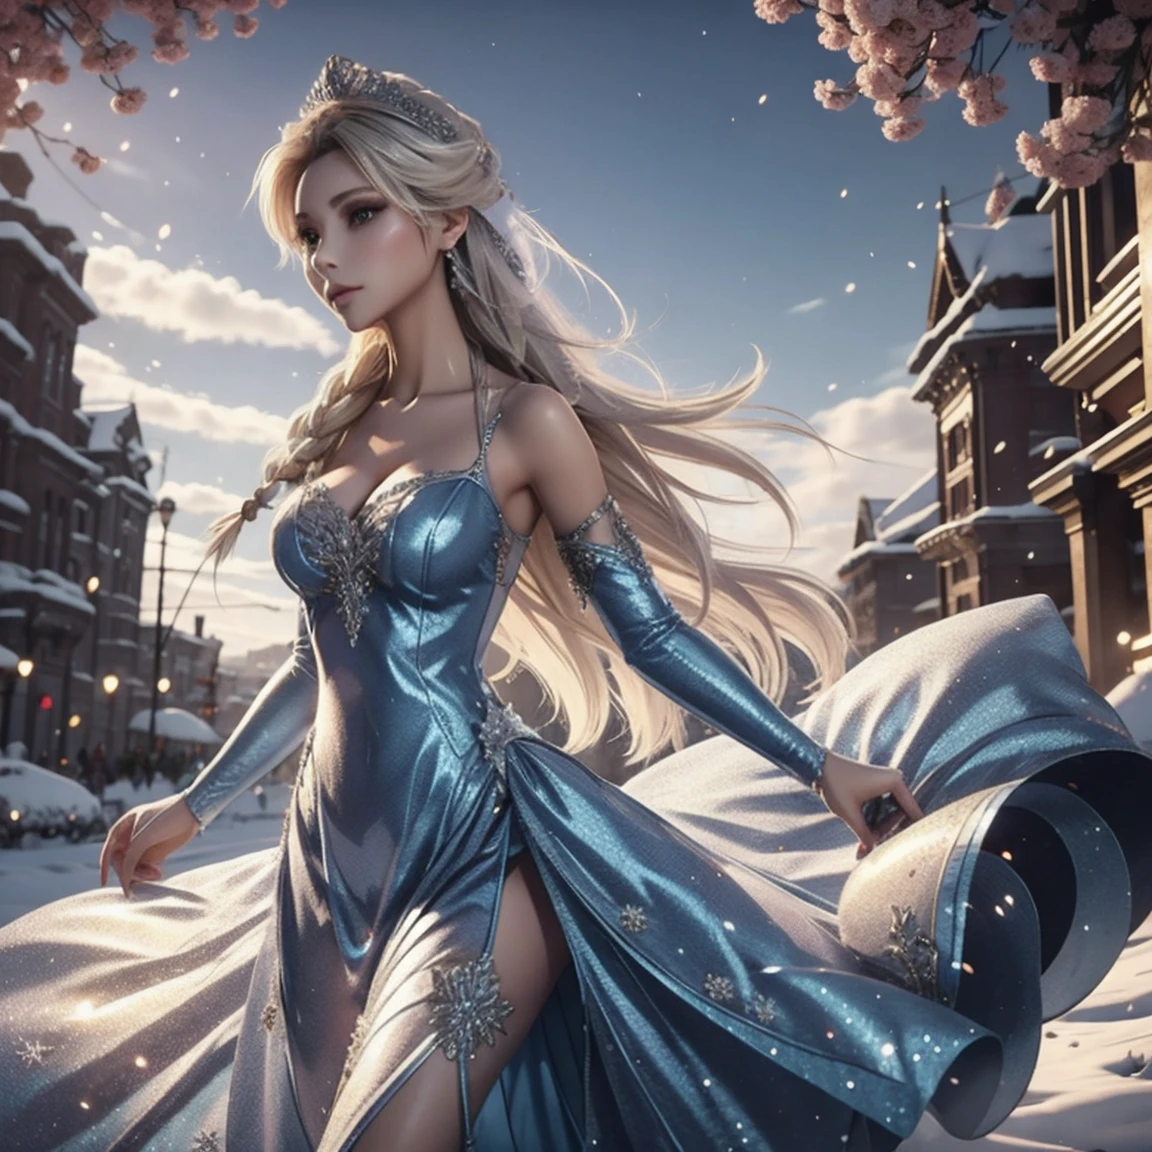 Erstellen Sie ein realistisches Bild von Elsa aus Frozen, echter Charakter Frozen Elsa, modern gekleidet für eine Silvesterparty . HDR 8K Texturkleid, visuelles Rendern Elsa, Elsa sollte ein rotes tragen, zartes langes Kleid , zusammen mit einer Weihnachtsmütze. Das Kleid sollte stilvoll und für eine Prinzessin geeignet sein. Silvesterkleid mit echten Federn und Quasten.